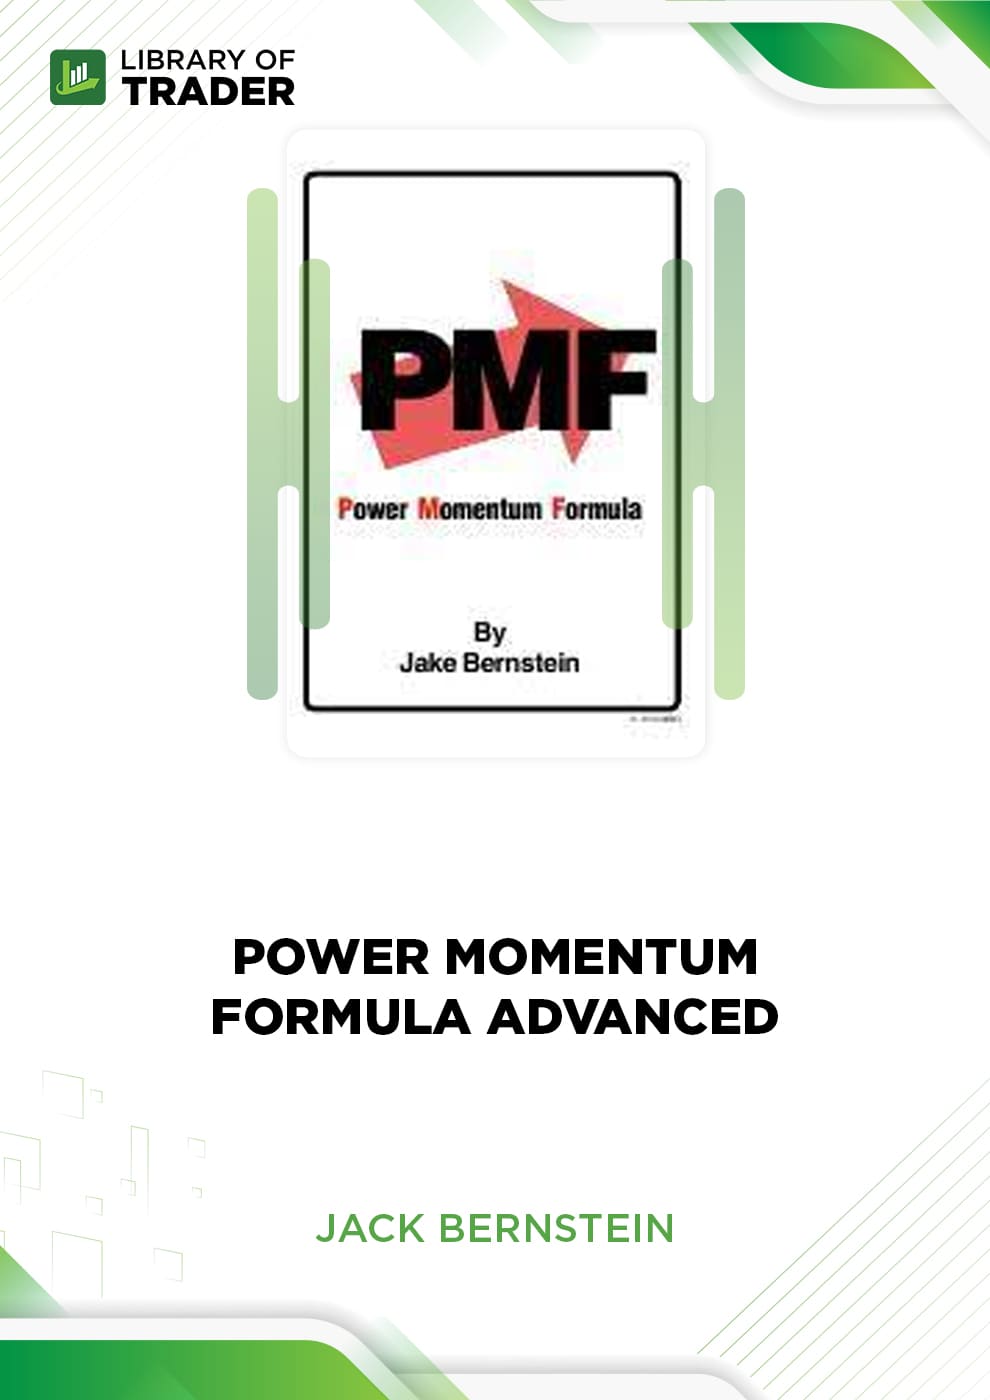 Power Momentum Formula by Jack Bernstein